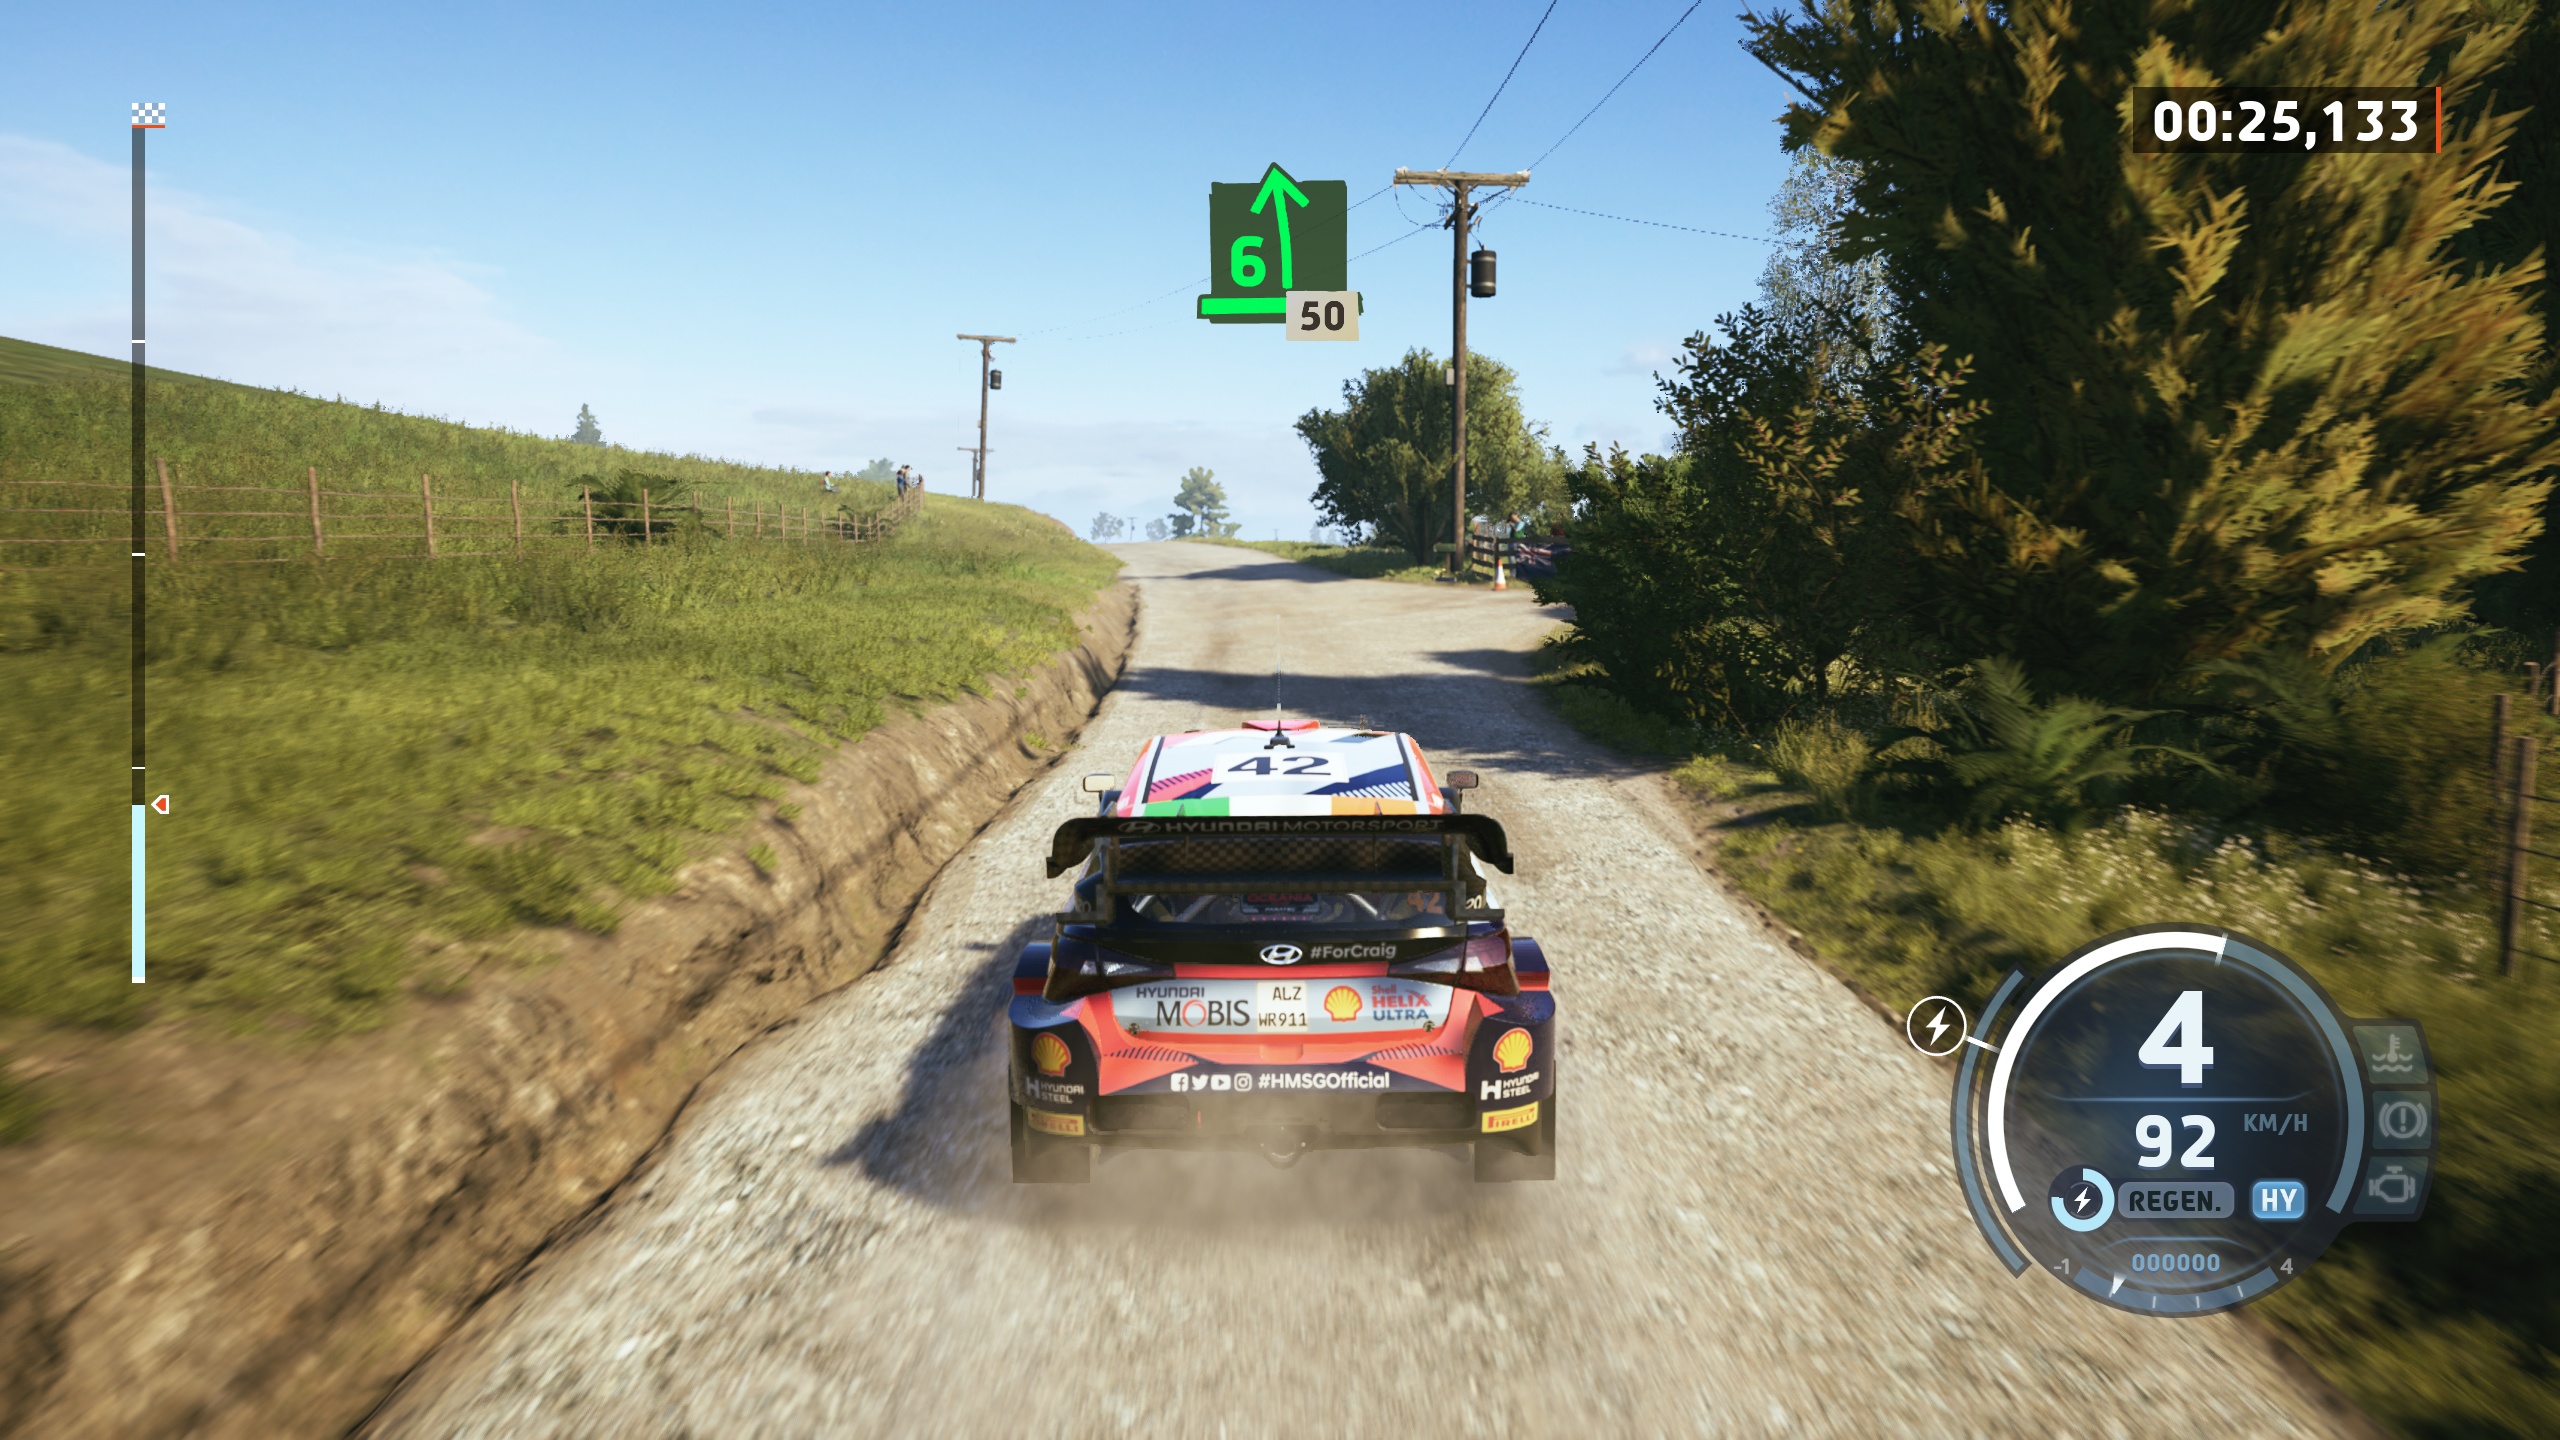 (Malgré le changement de moteur, le saut graphique par rapport à Dirt Rally 2.0 reste assez limité.)